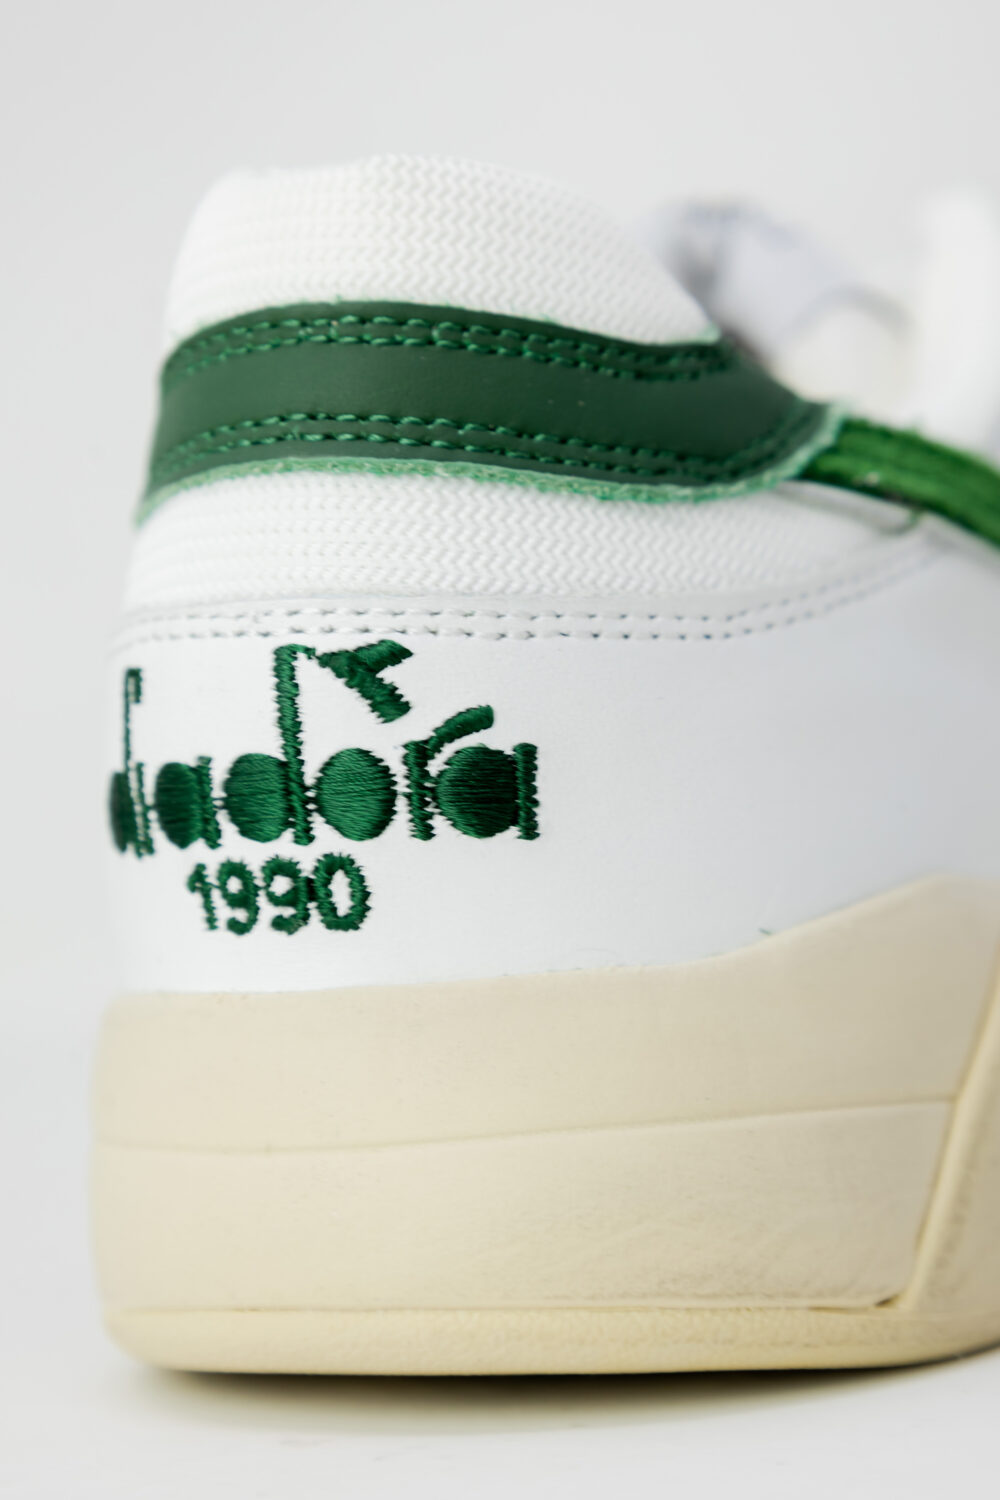 Sneakers Diadora Heritage B.560 USED Verde - Foto 5